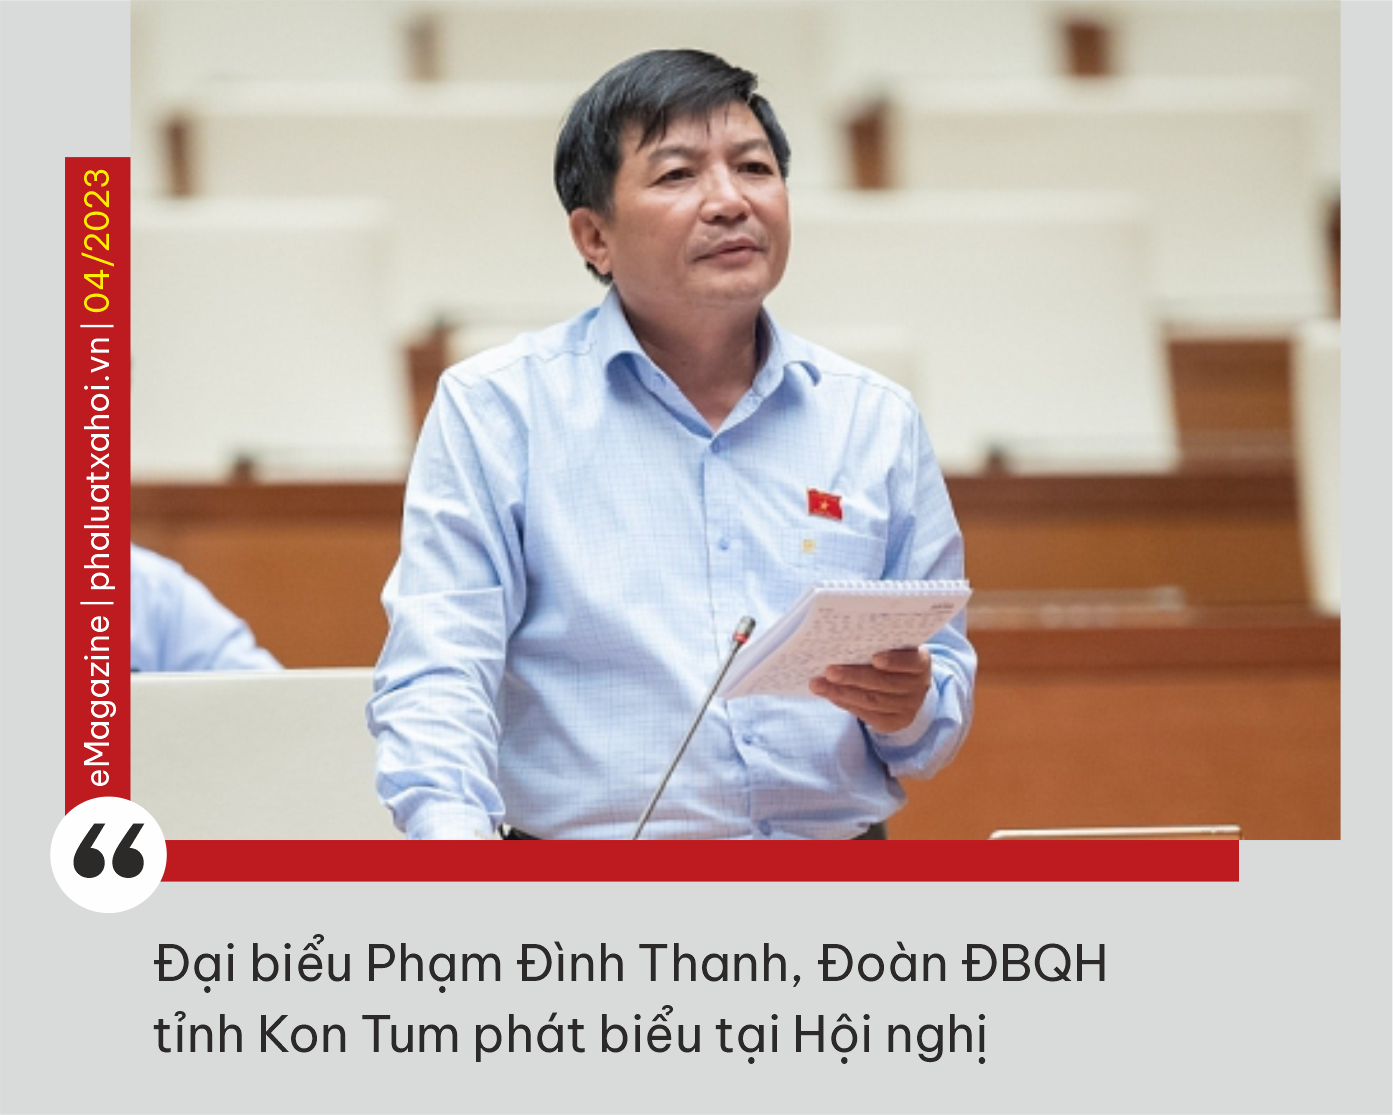 Kỳ 4: Thành tựu lập pháp trong bảo đảm quyền con người của Quốc hội Việt Nam